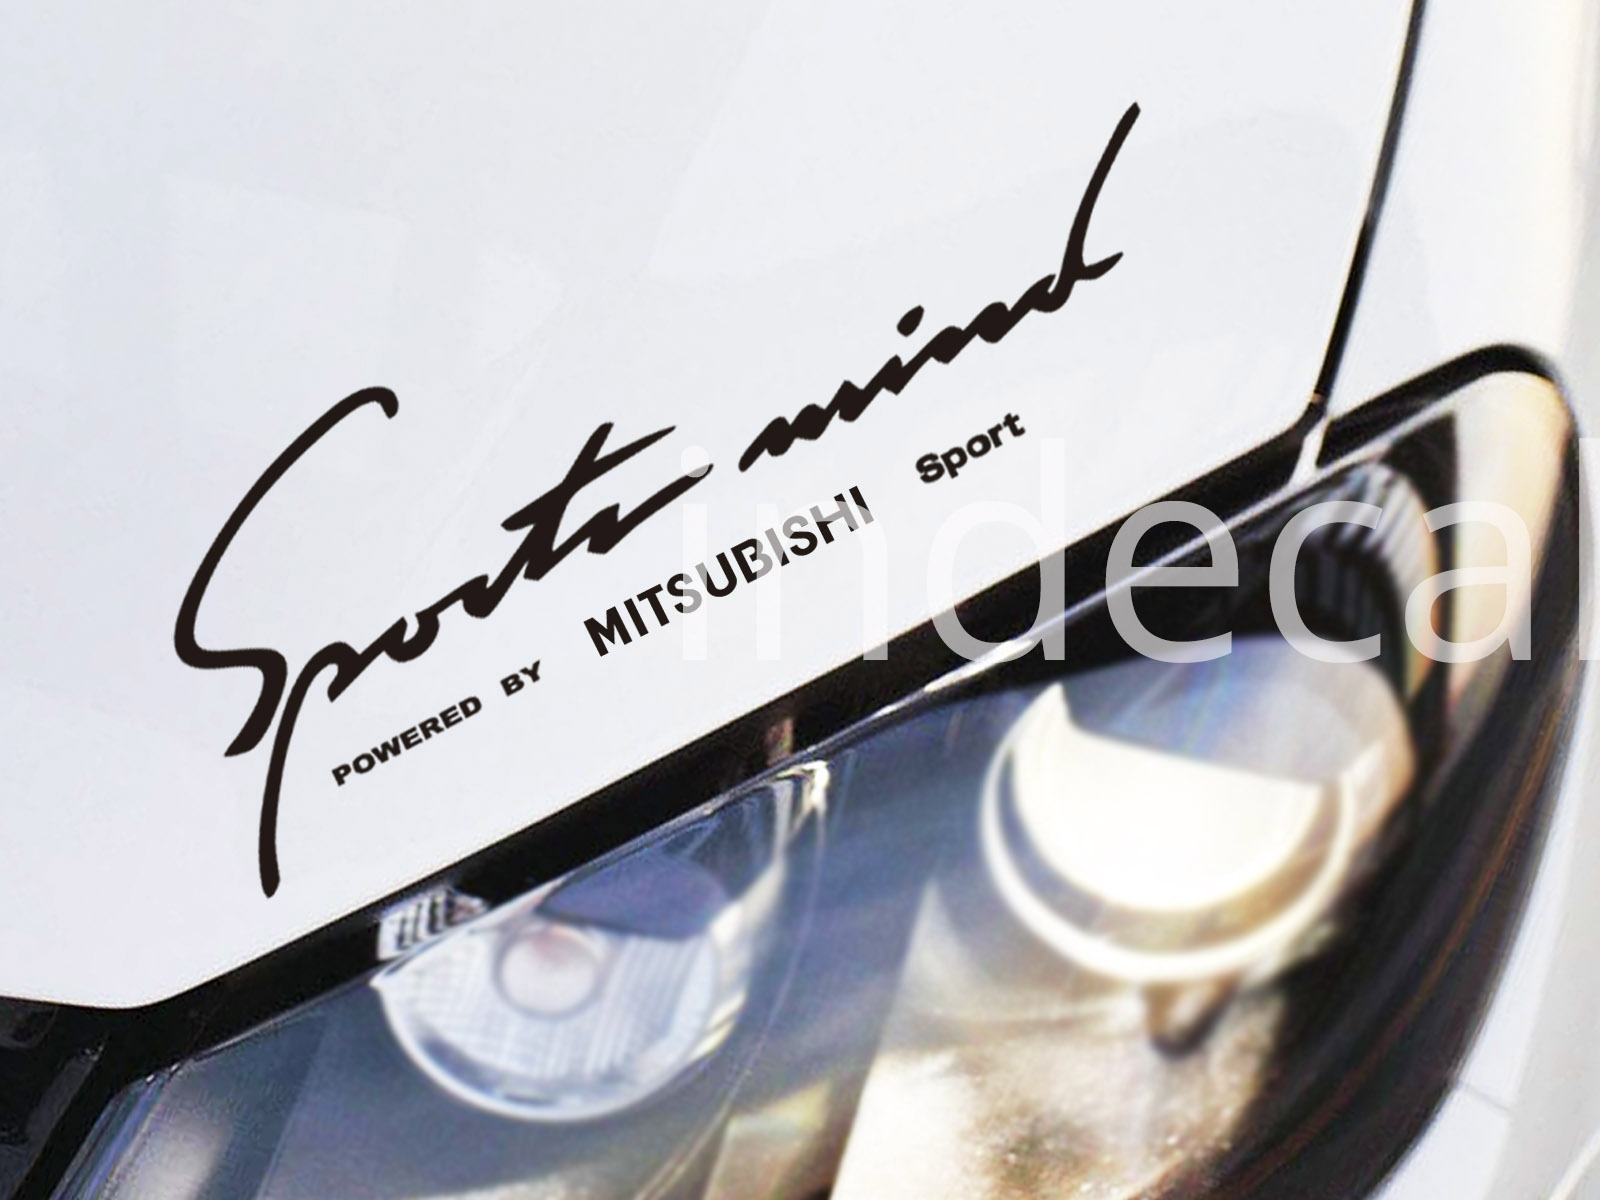 1 x Mitsubishi Sports Mind Sticker - Black